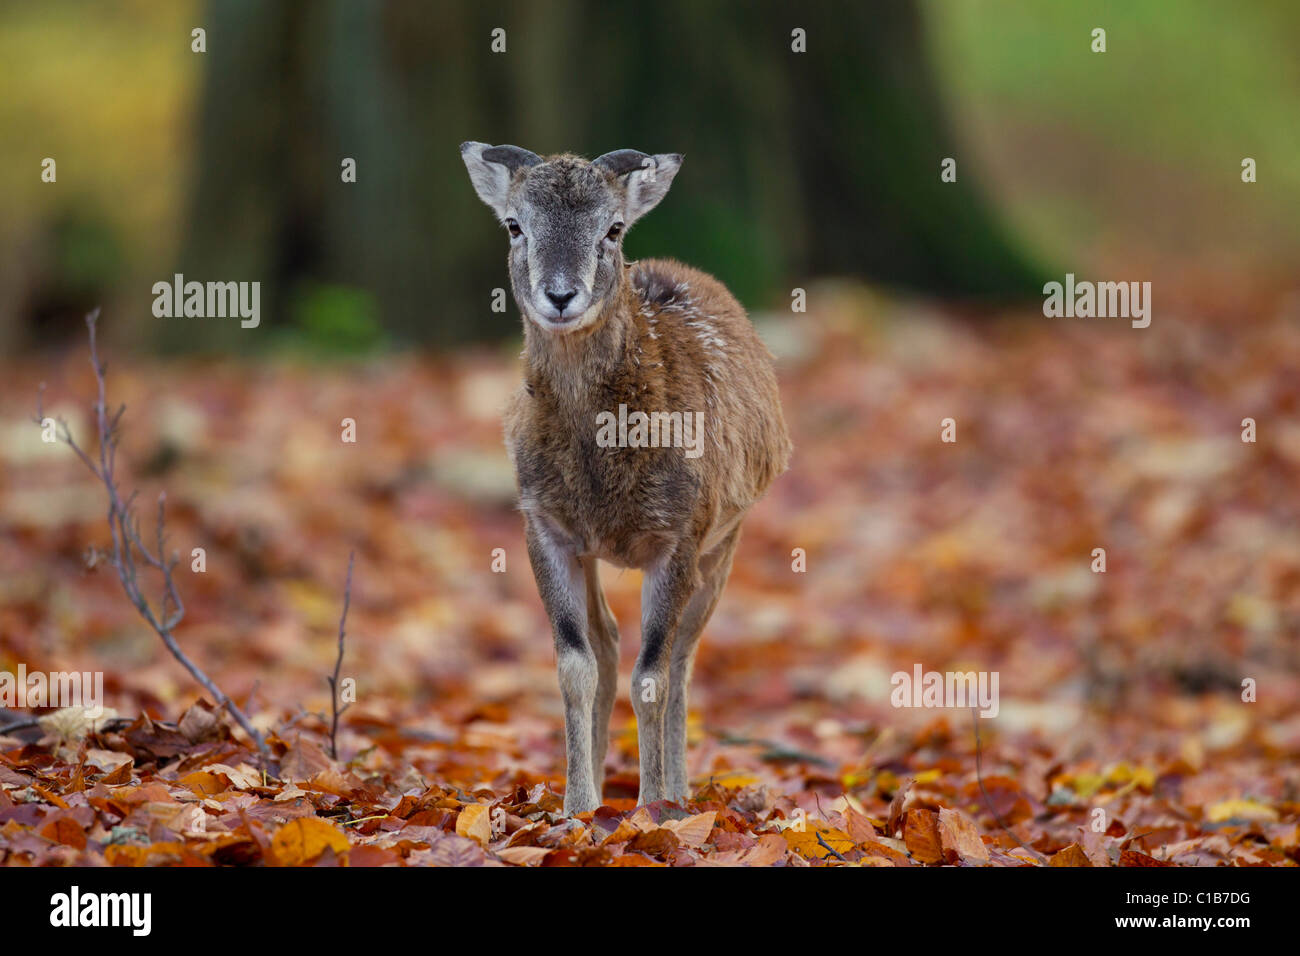 Mouflon (Ovis gmelini européenne / Ovis ammon musimon / Ovis orientalis musimon) agneau dans la forêt en automne, Allemagne Banque D'Images